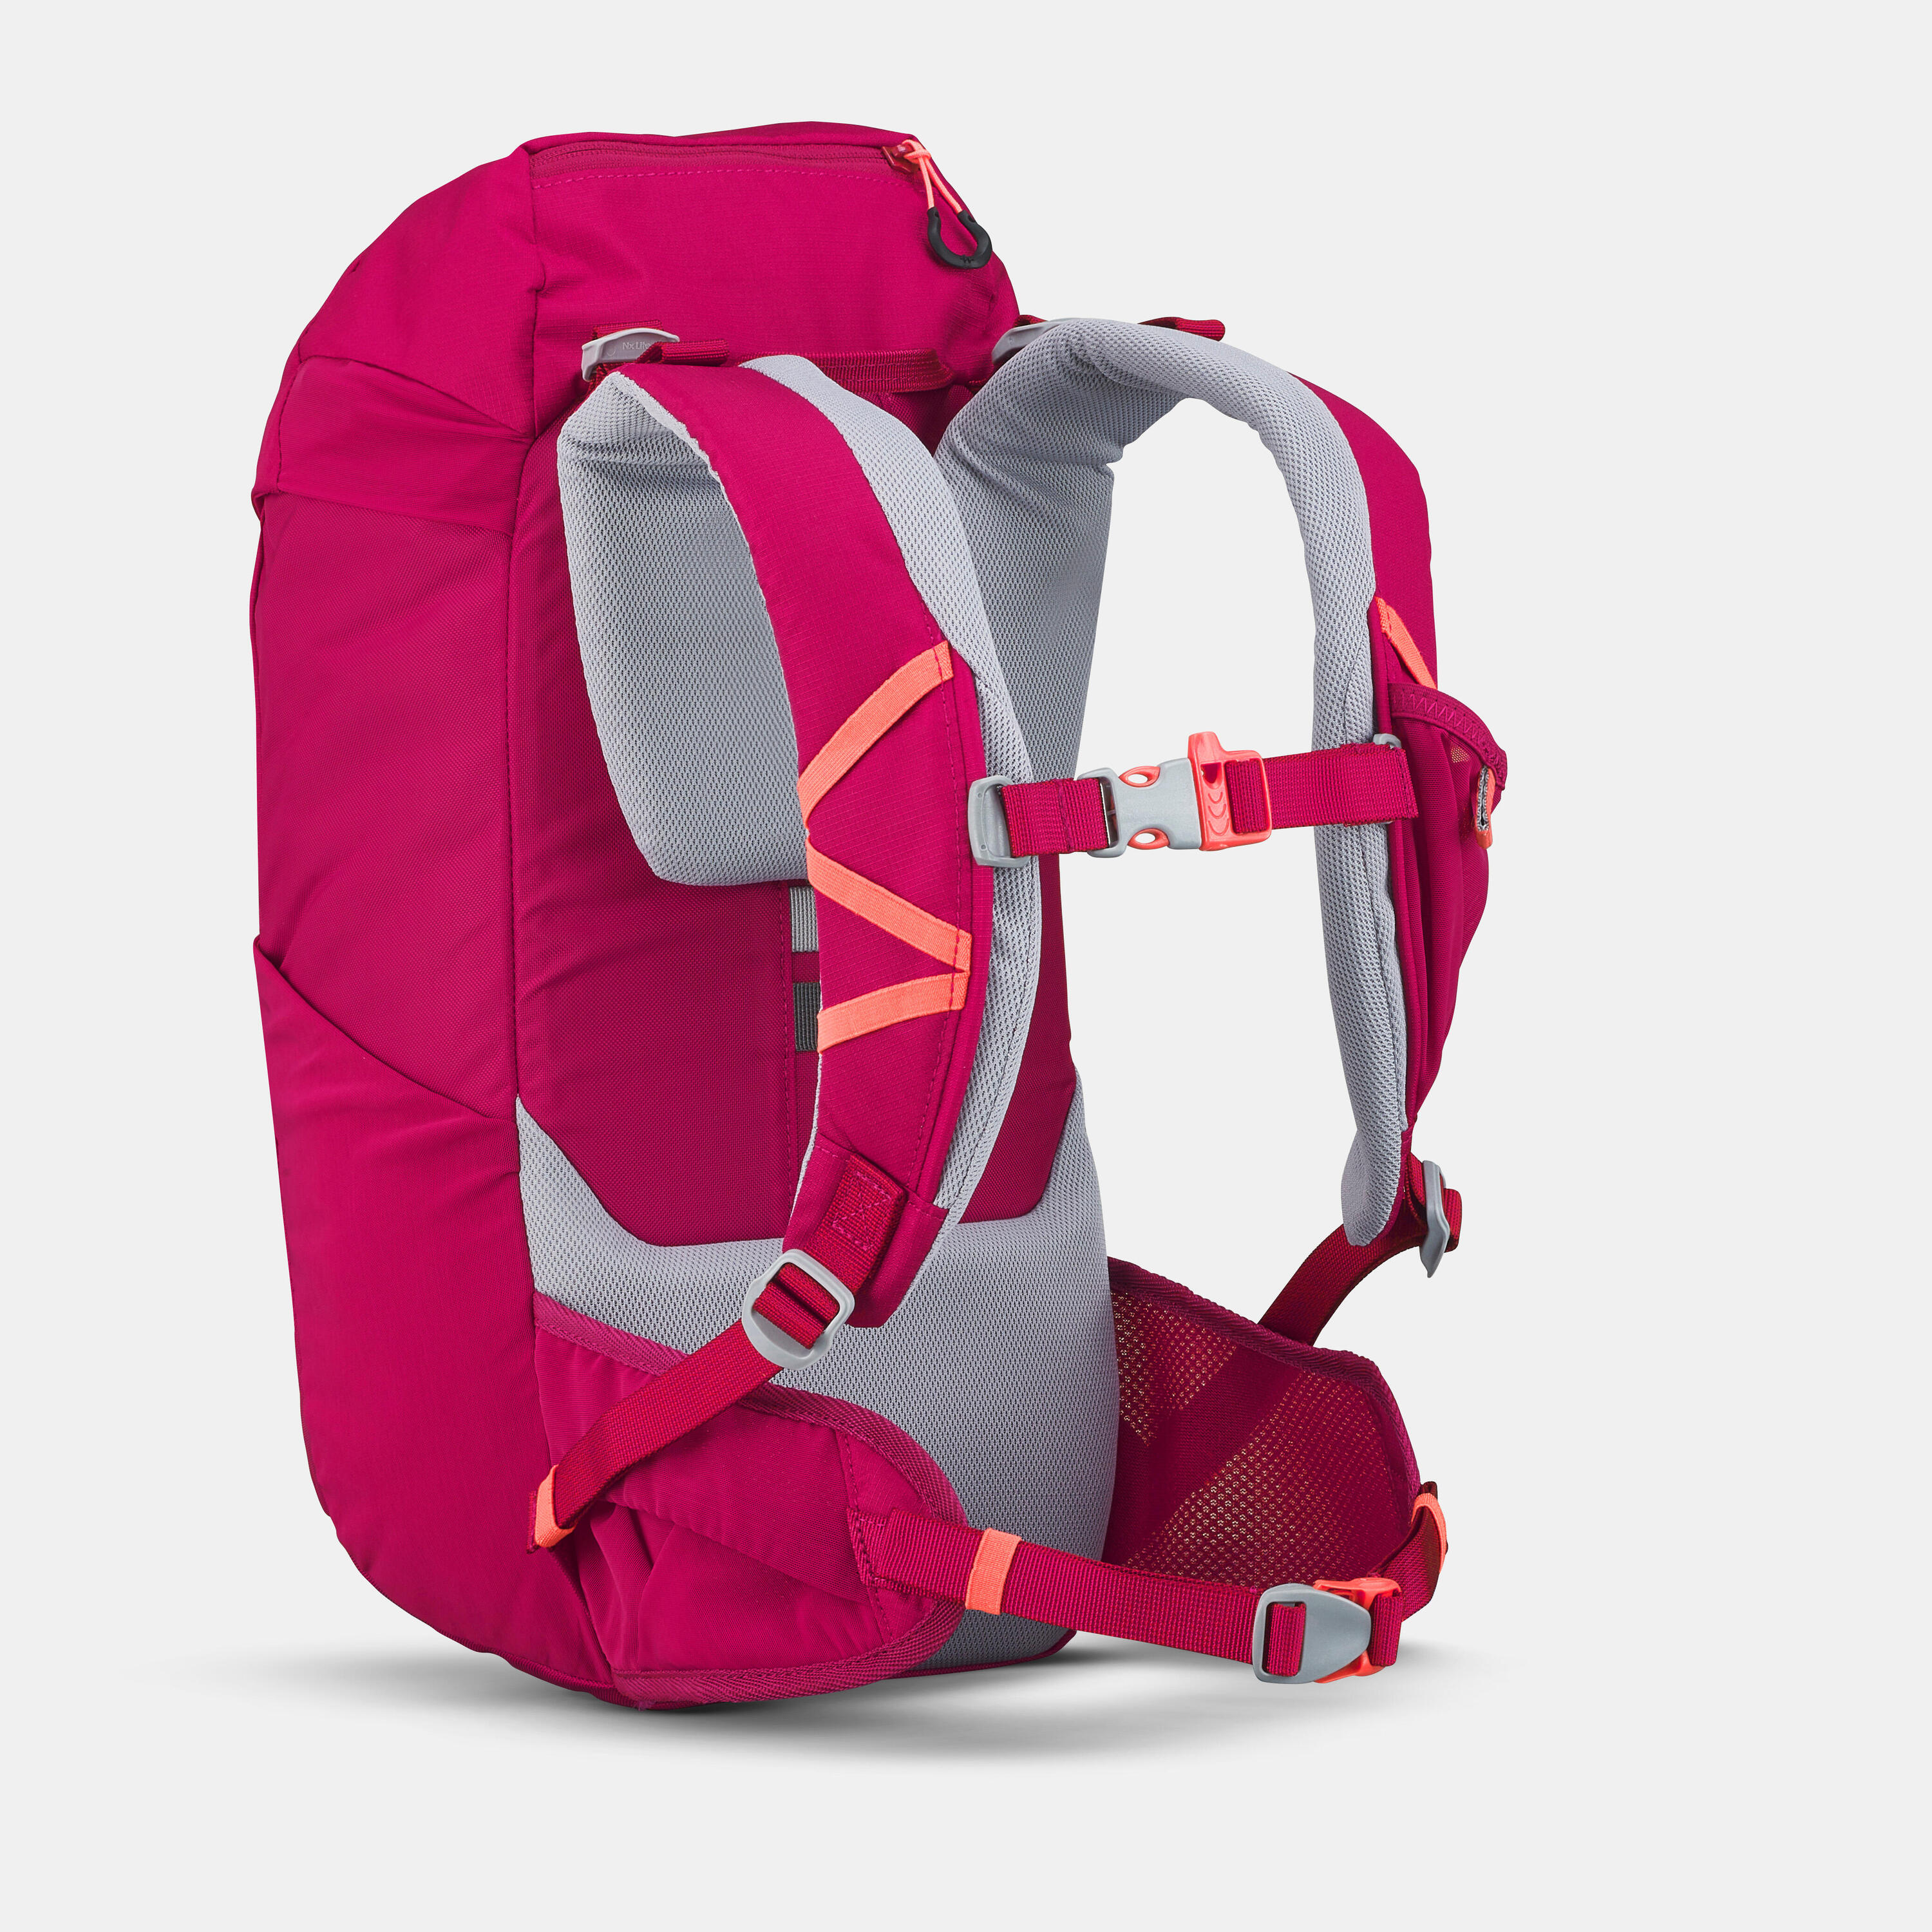 Kids' hiking backpack 18L - MH500 4/11